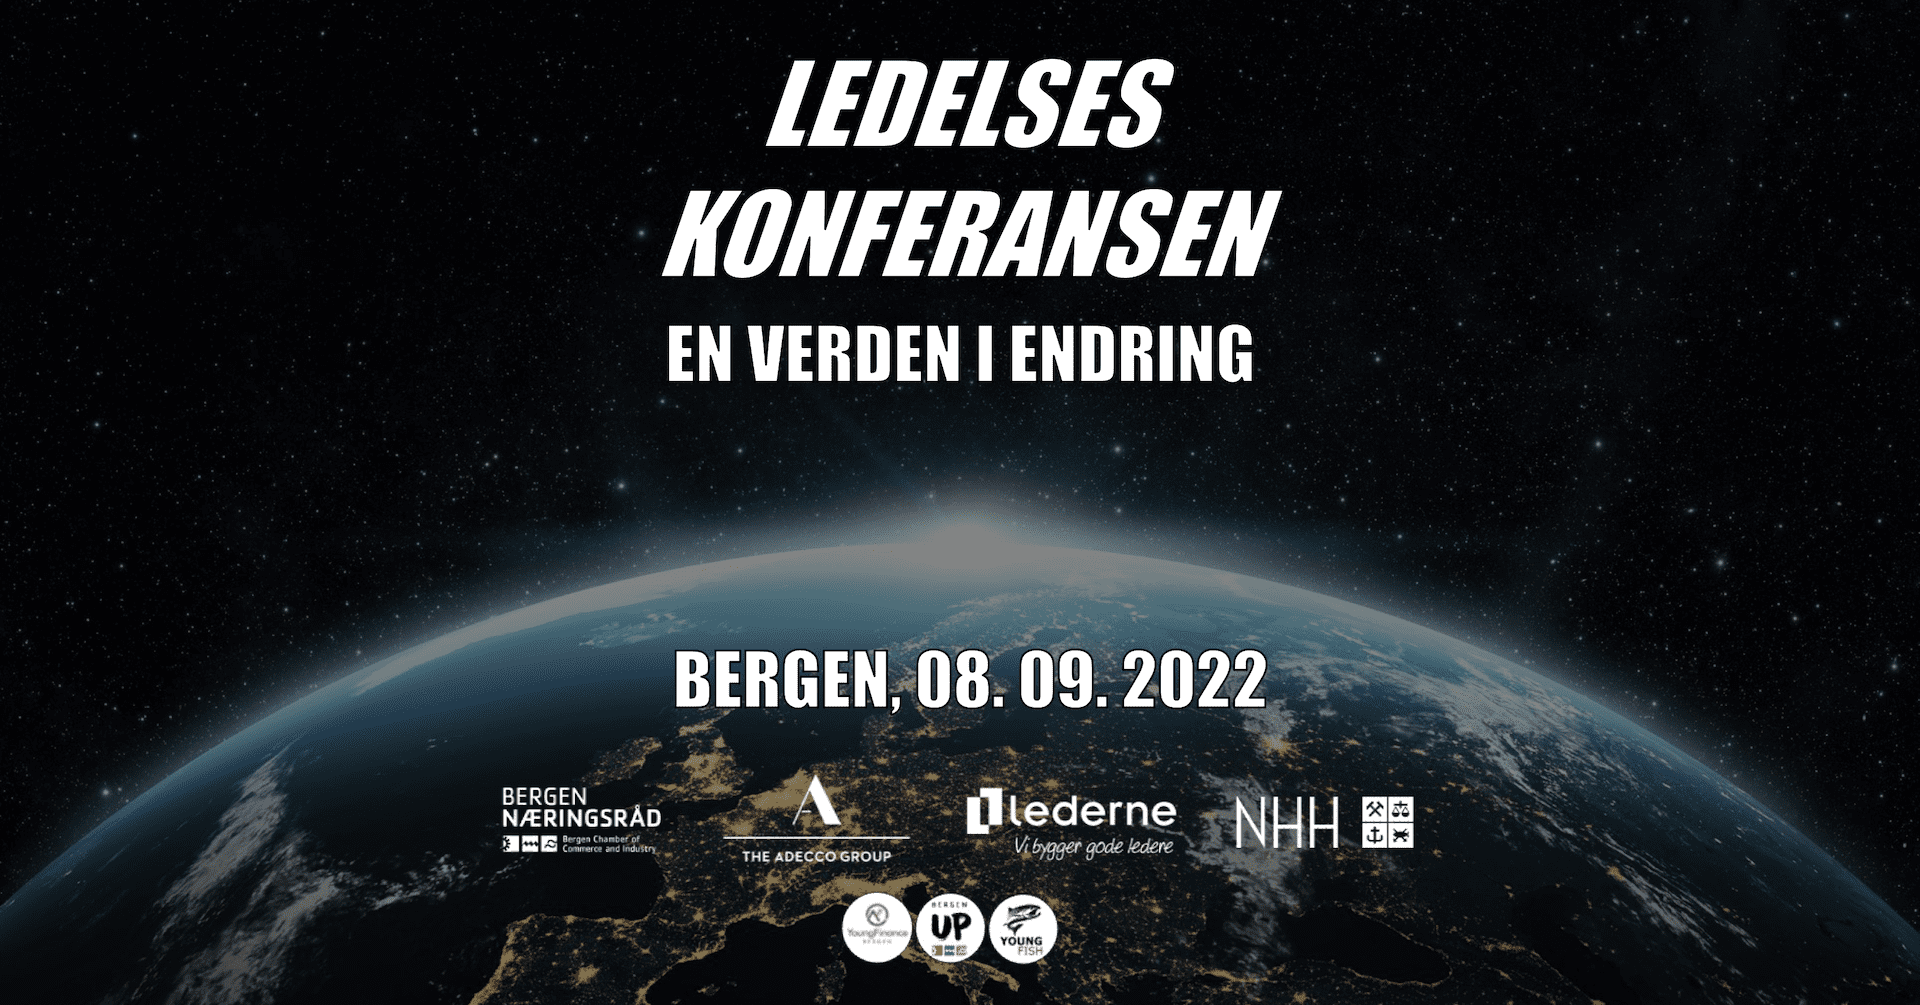 Plakat for Ledelseskonferansen i Bergen 2022